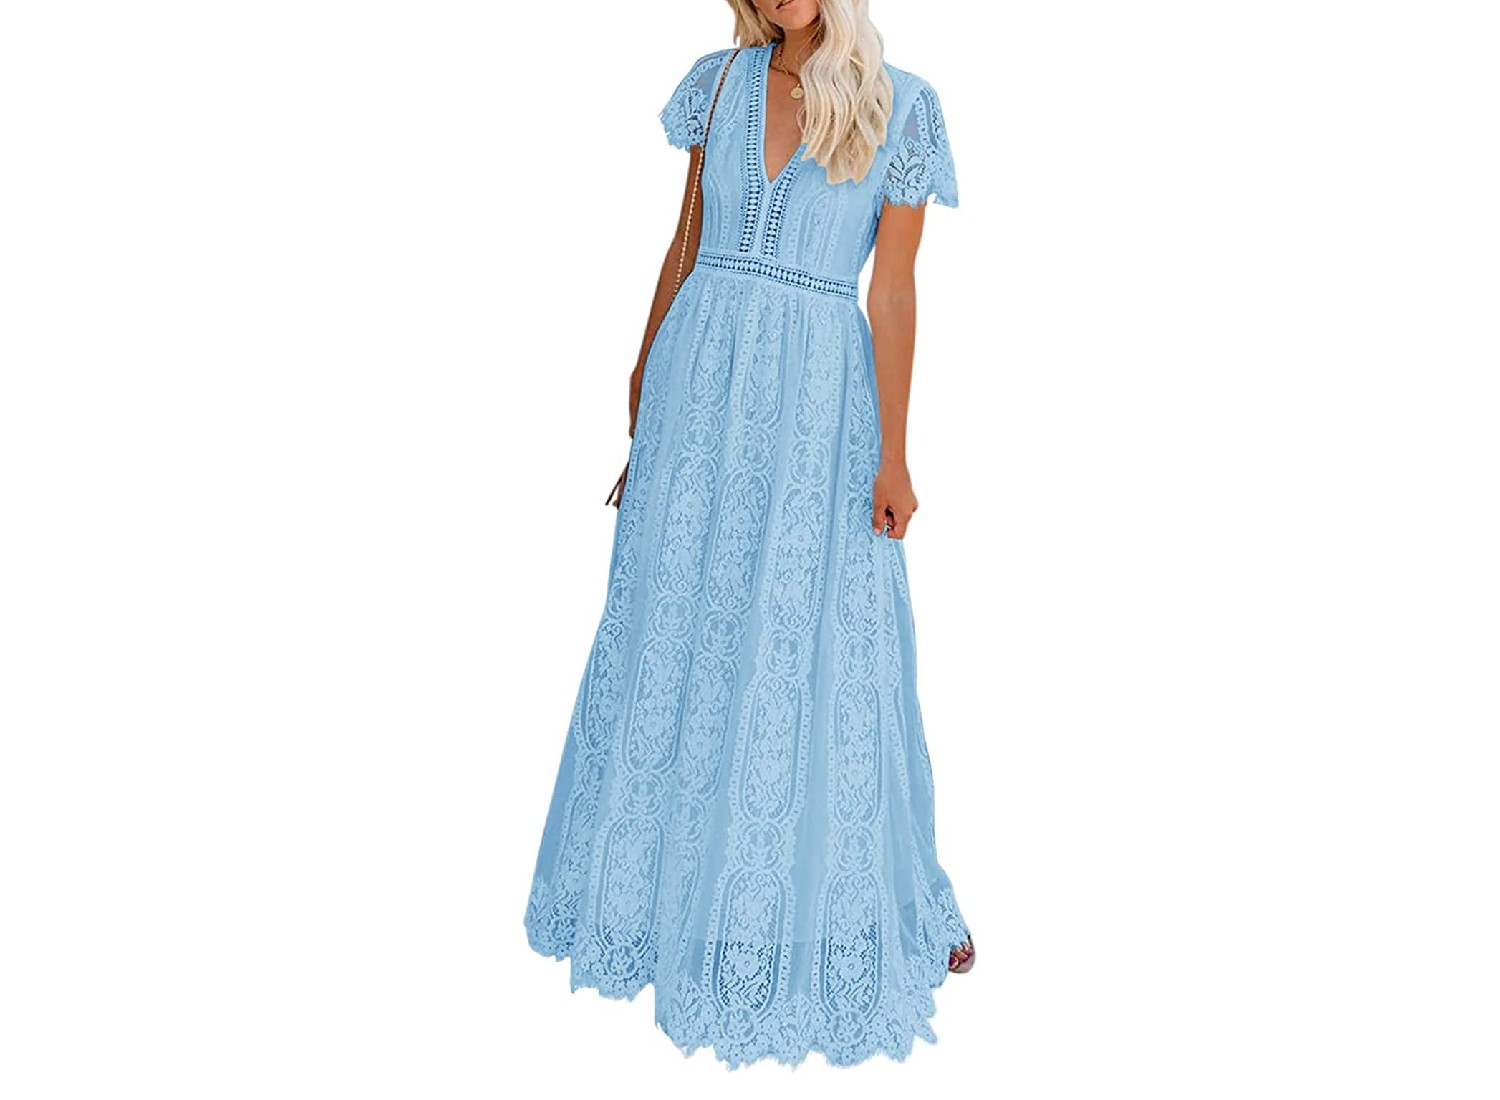 A light blue dress on a blonde model.